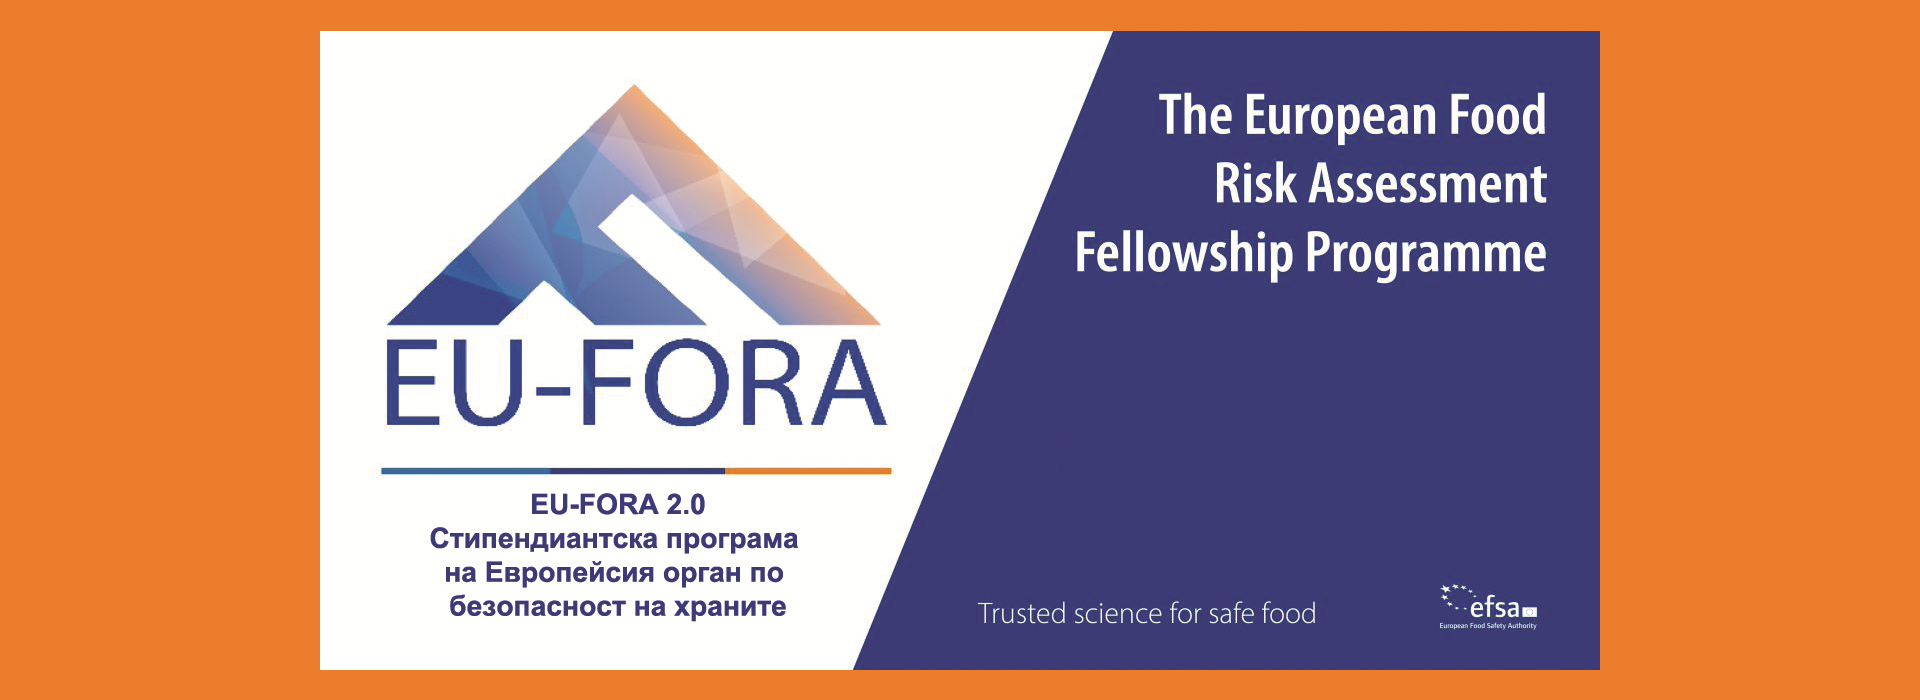 EU-FORA 2.0 Стипендиантска програма на Европейсия орган по безопасност на храните